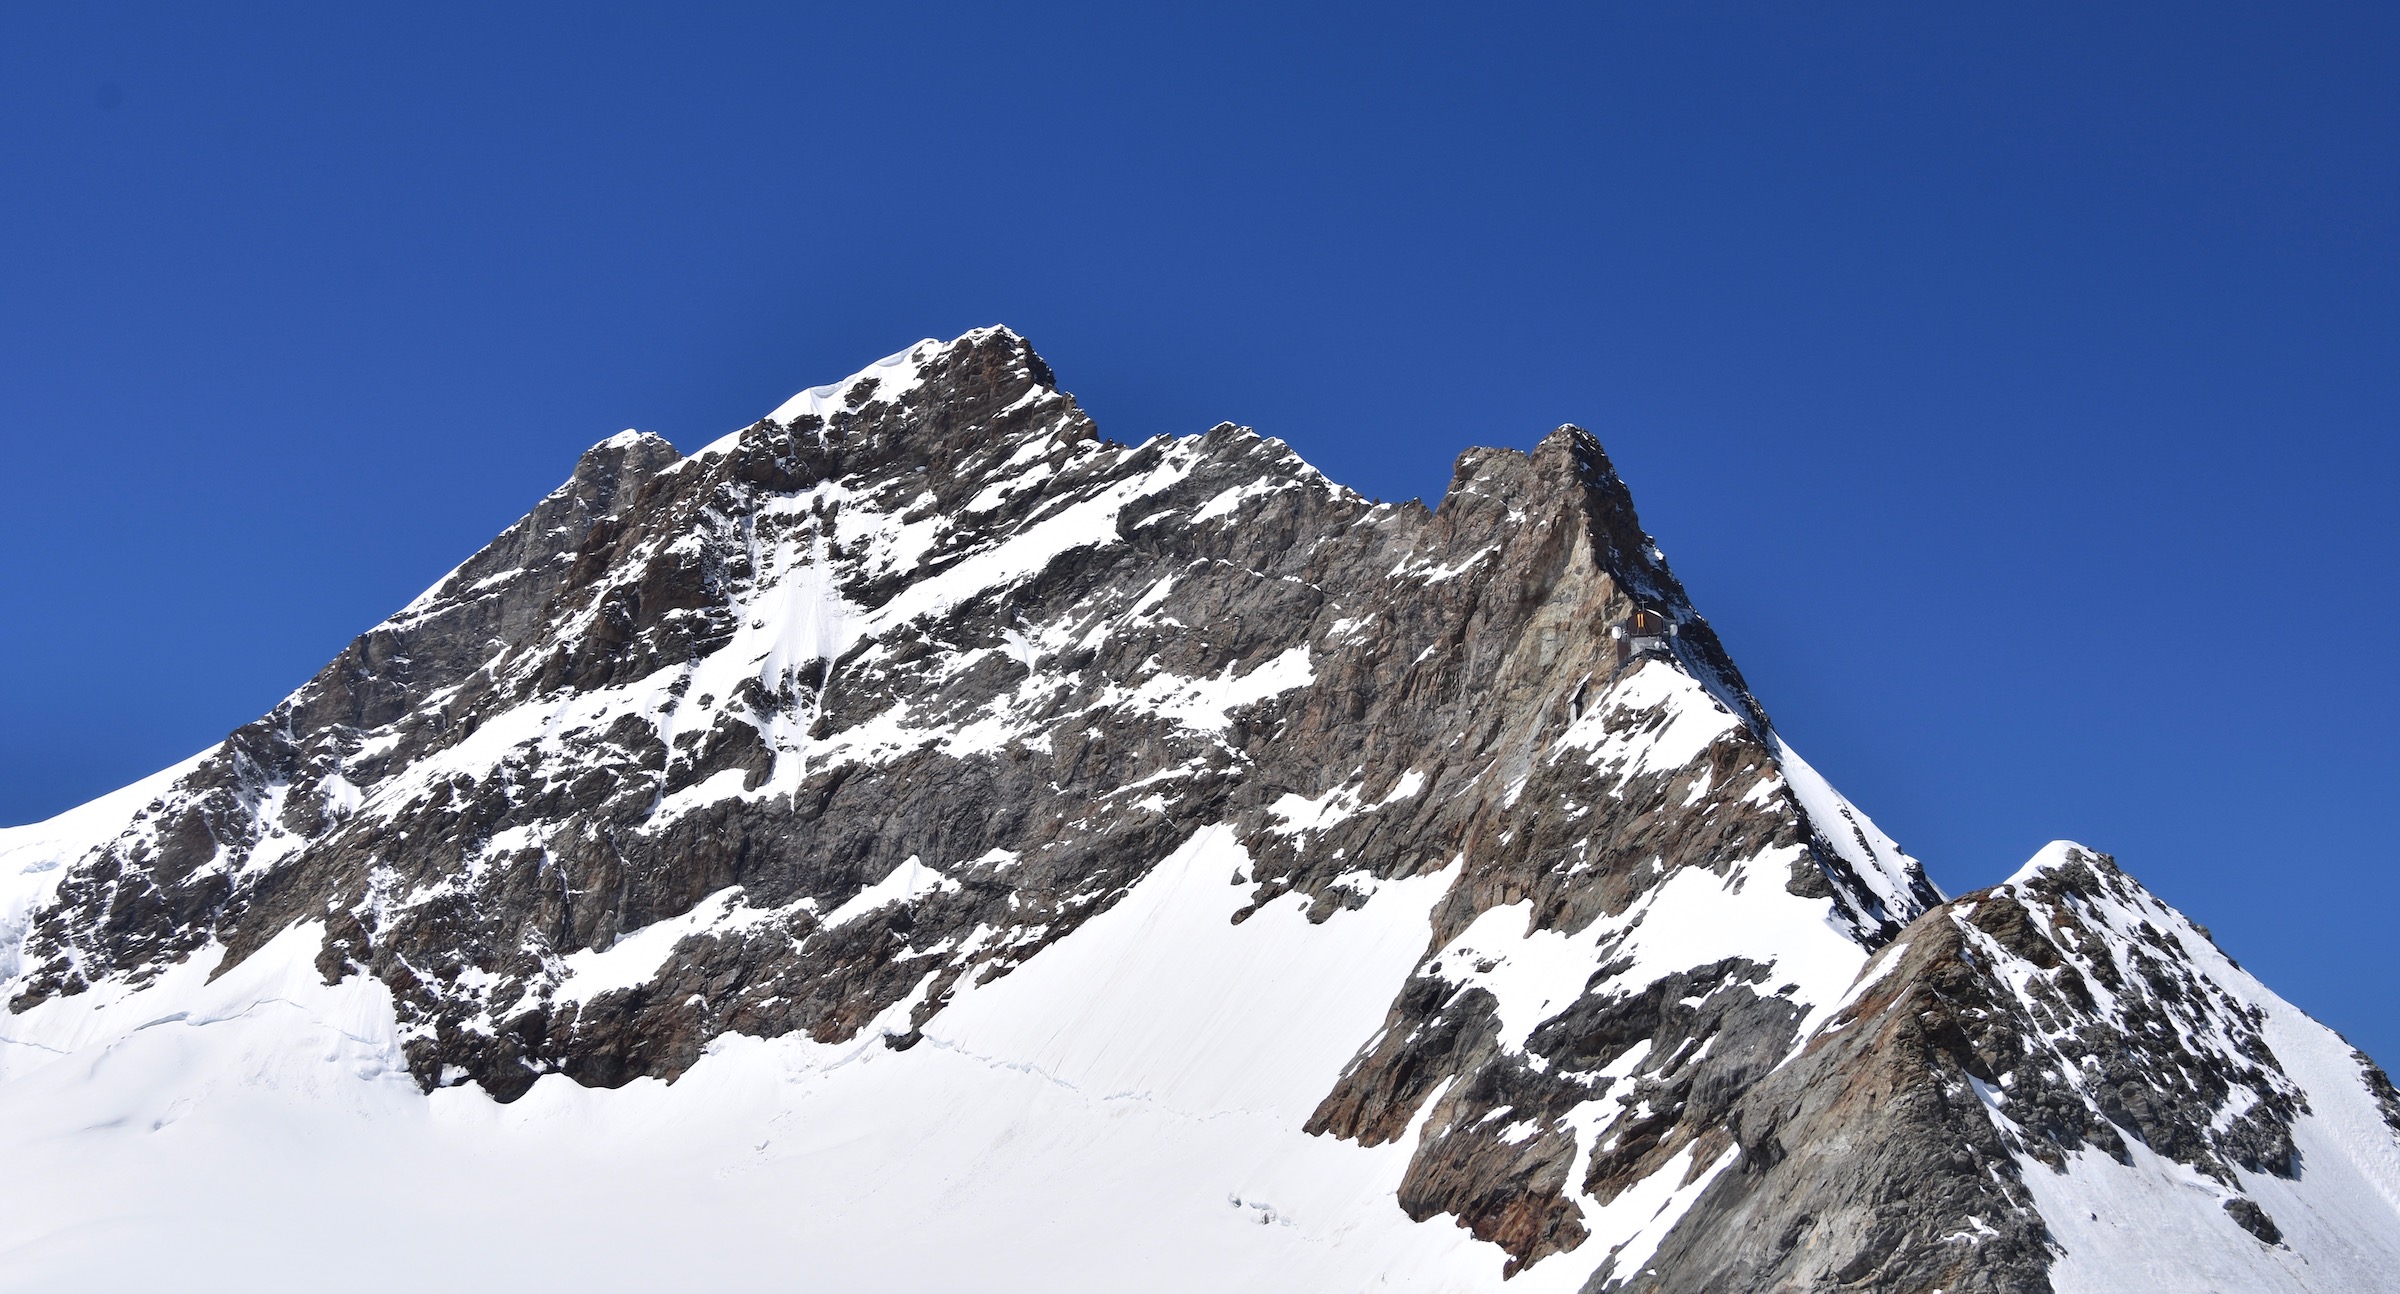 Monch from the Jungfraujoch